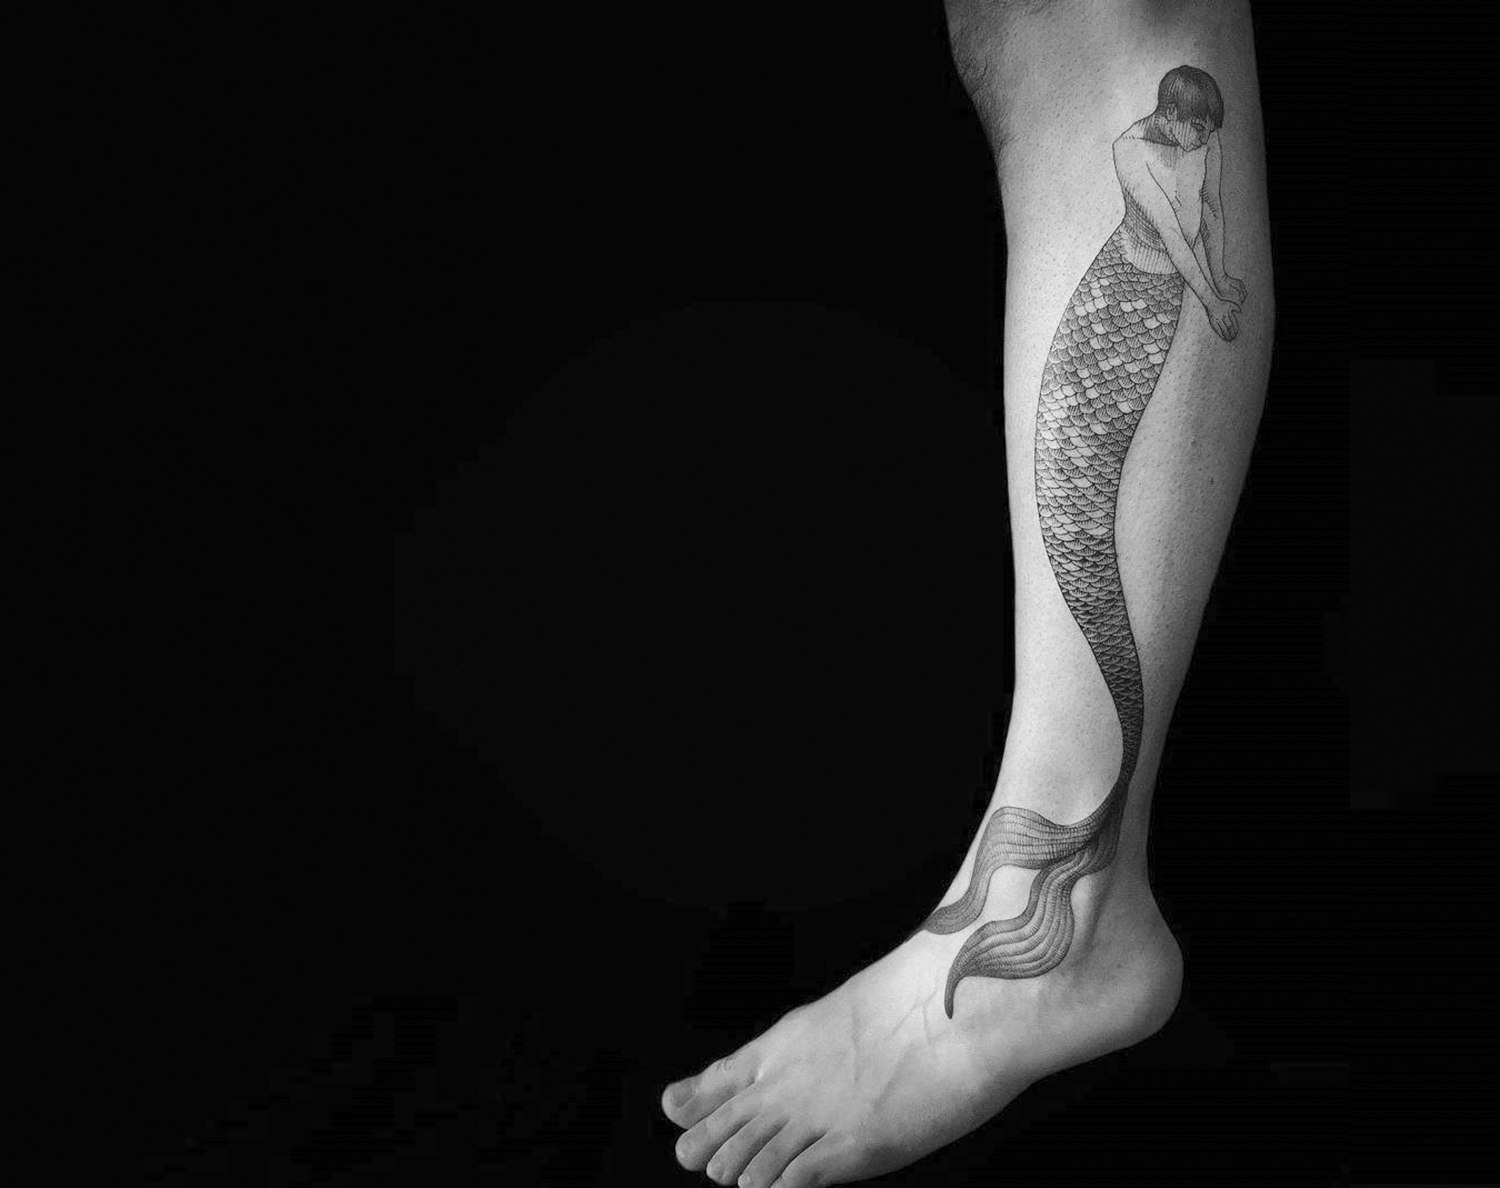 mermaid tattoo on leg